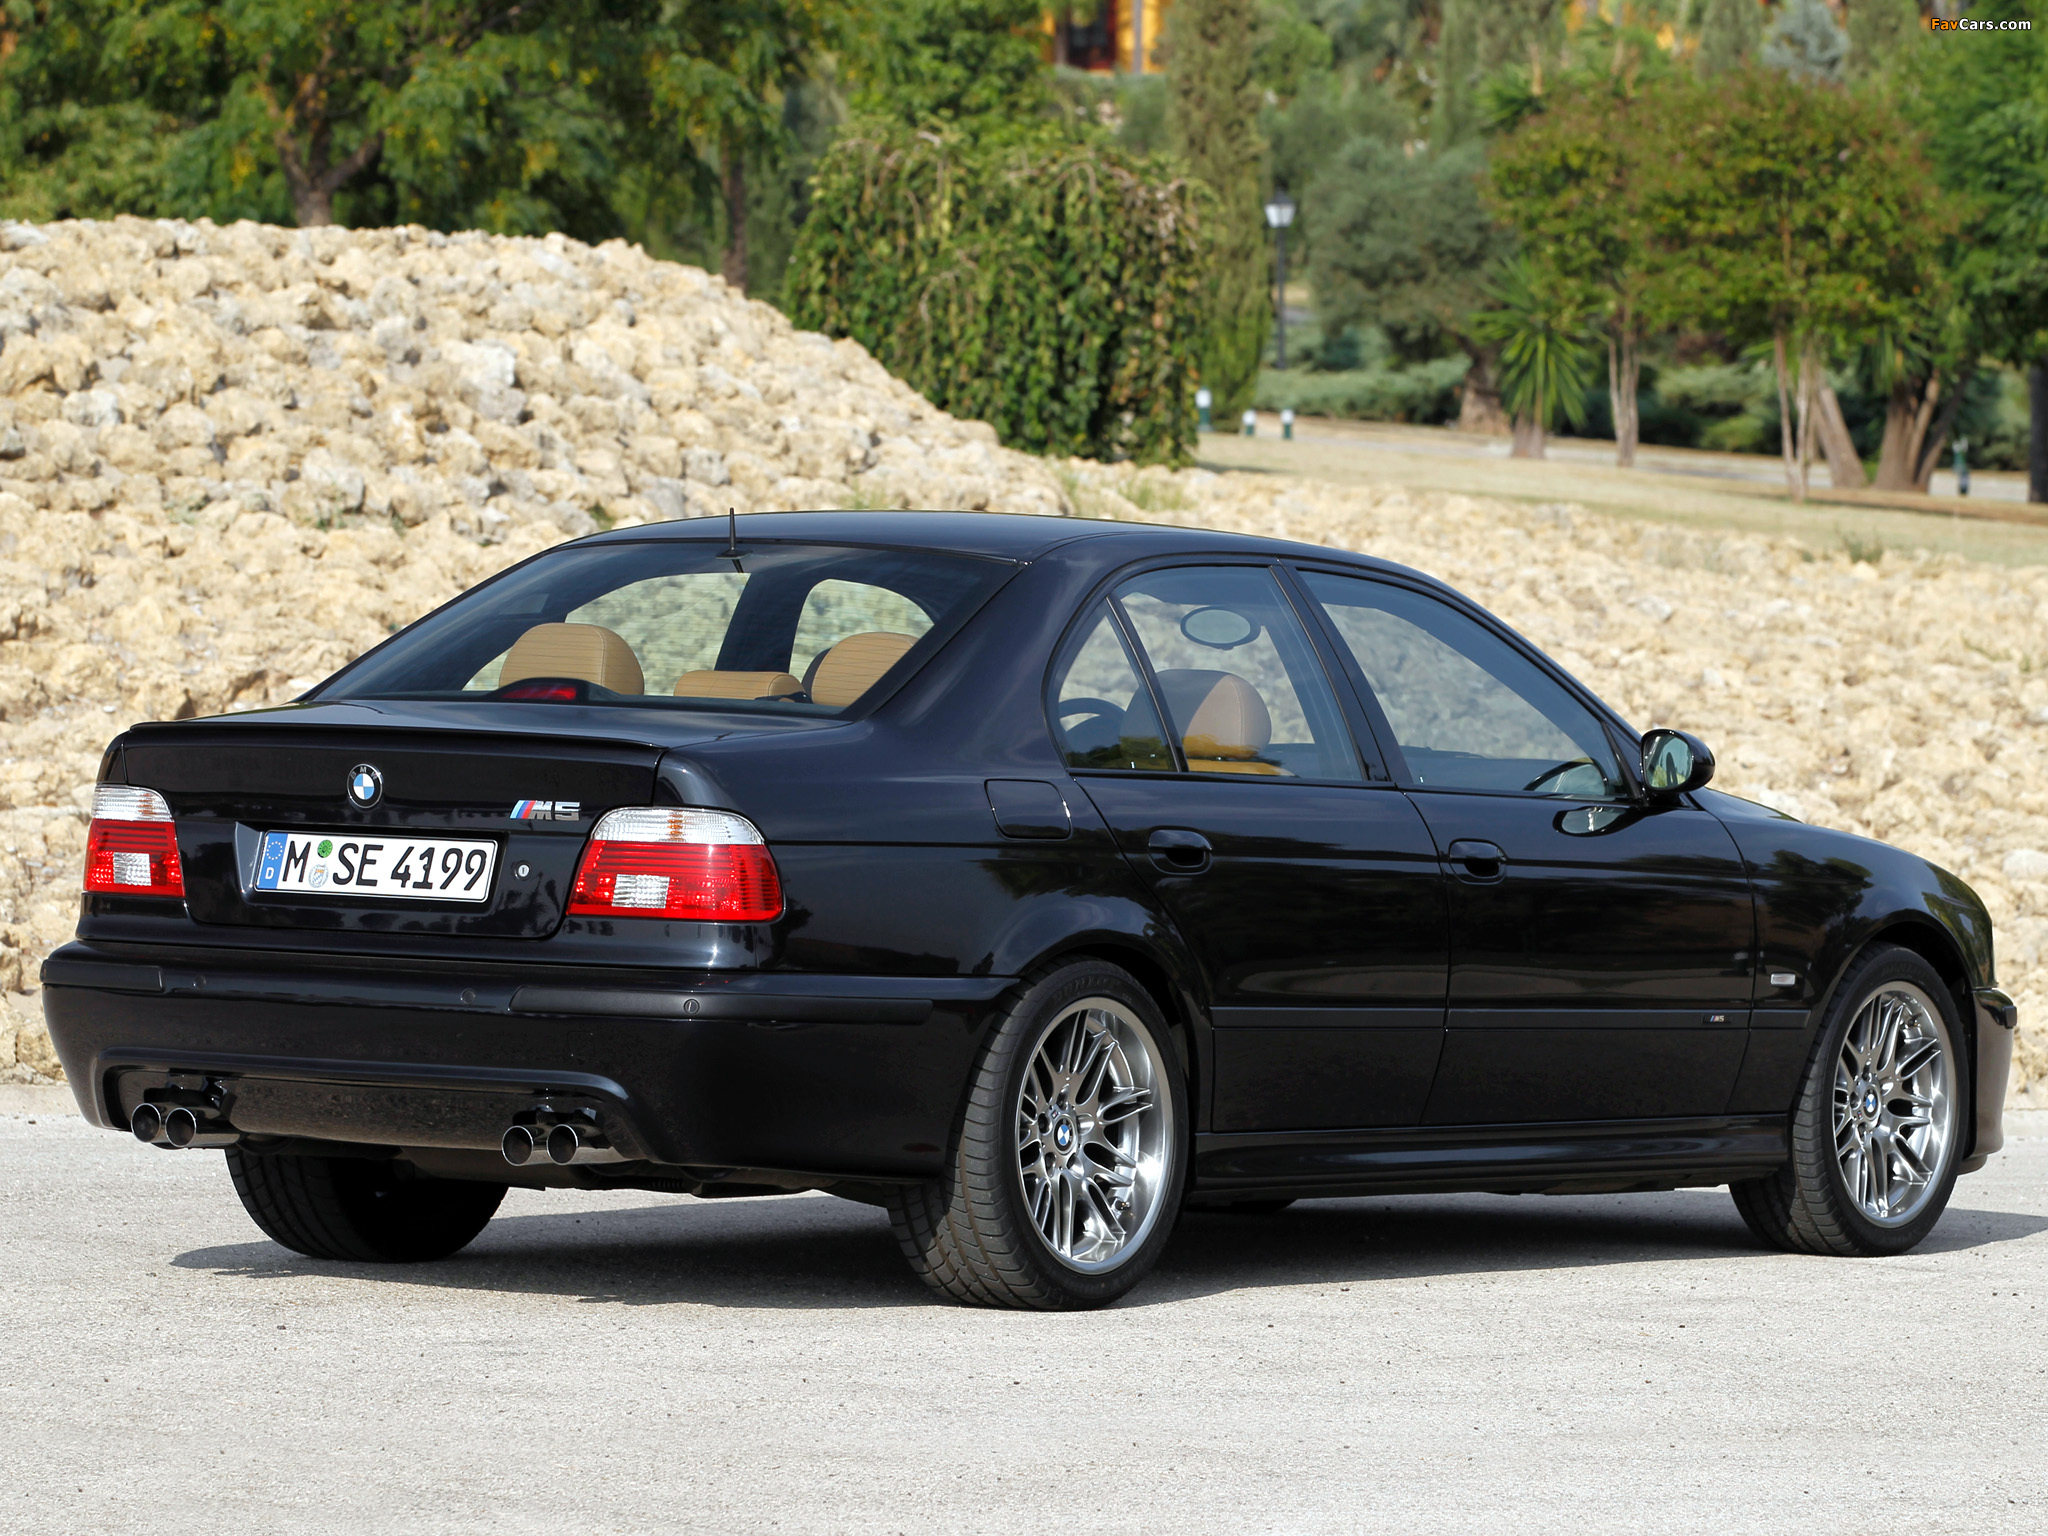 E 0 39. BMW m5 e39. BMW m5 e39 2000. BMW 5 e39 m5. BMW m5 e39 2003.